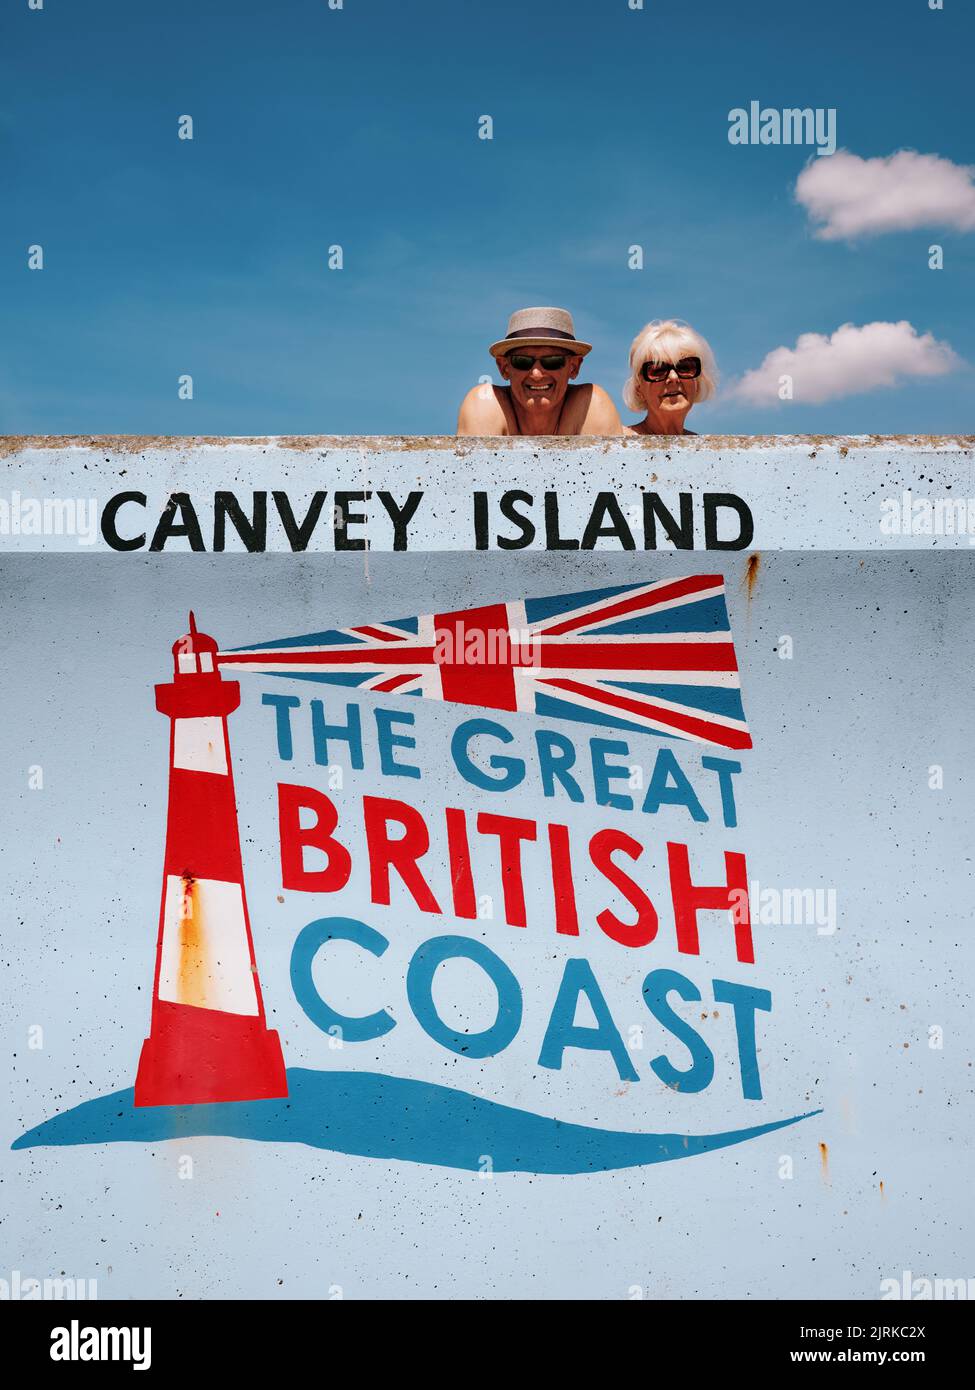 Turistas del verano del staycation - el faro de la costa británica del arte de la isla de Canvey, del estuario del Támesis, Essex, Inglaterra, Reino Unido - gente de la vida de Essex Foto de stock